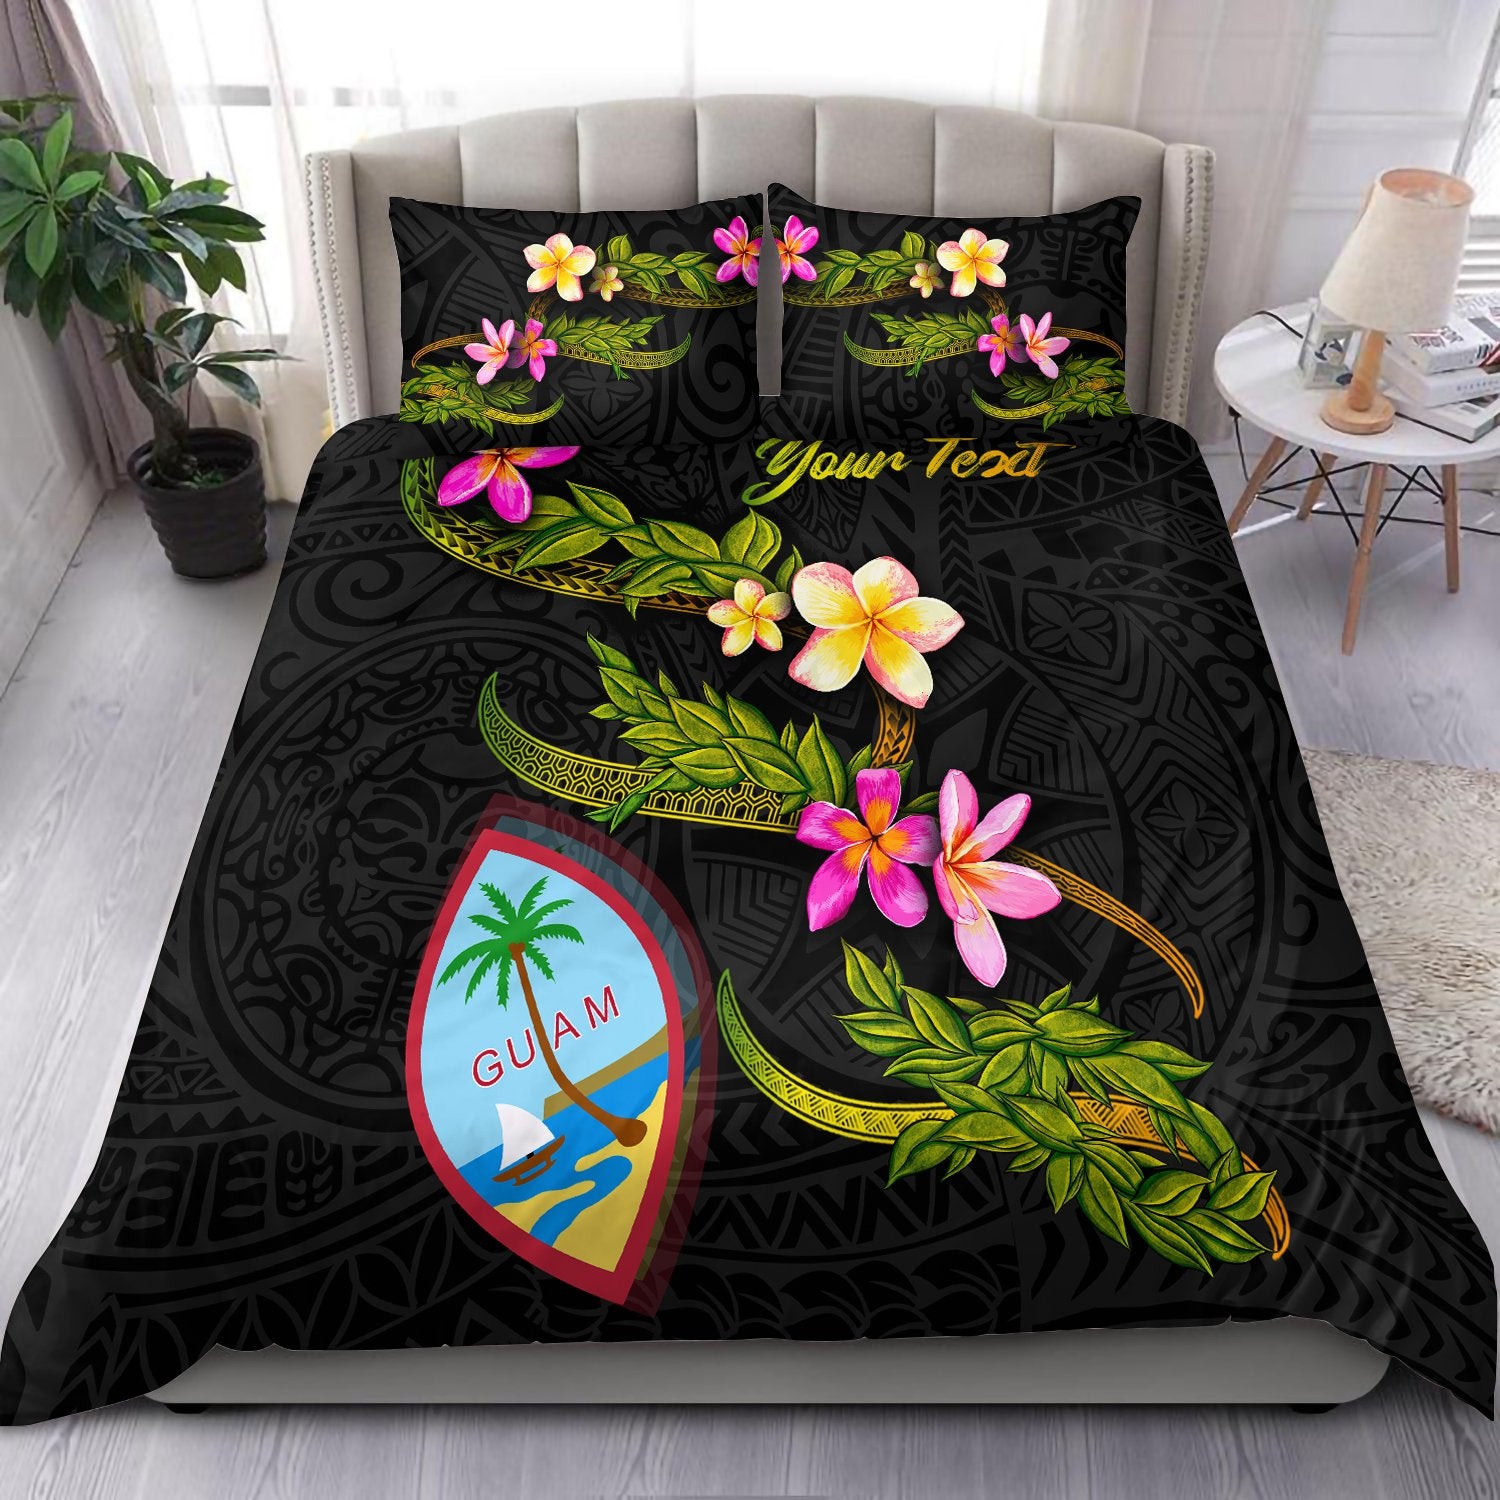 Guam Polynesian Custom Personalised Bedding Set - Plumeria Tribal Black - Polynesian Pride